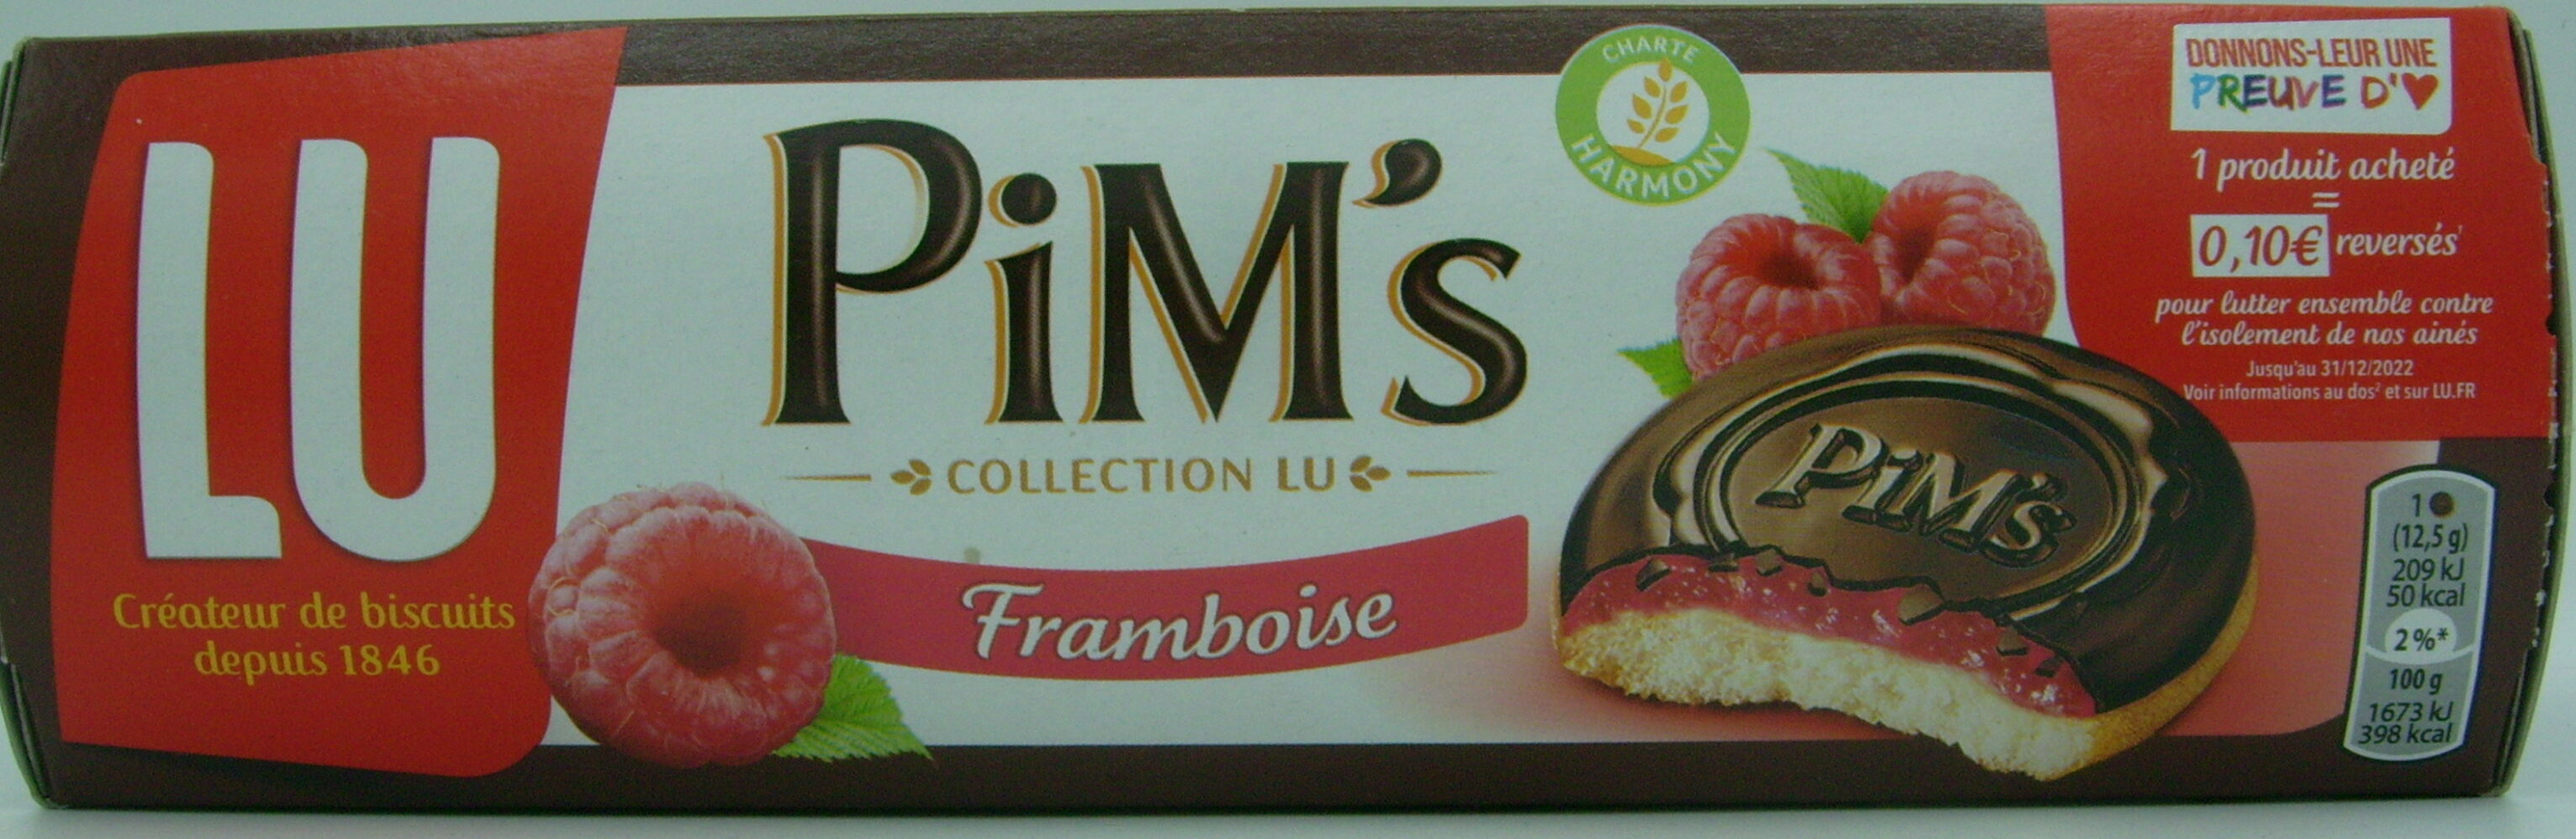 Pim's framboise - Producte - fr